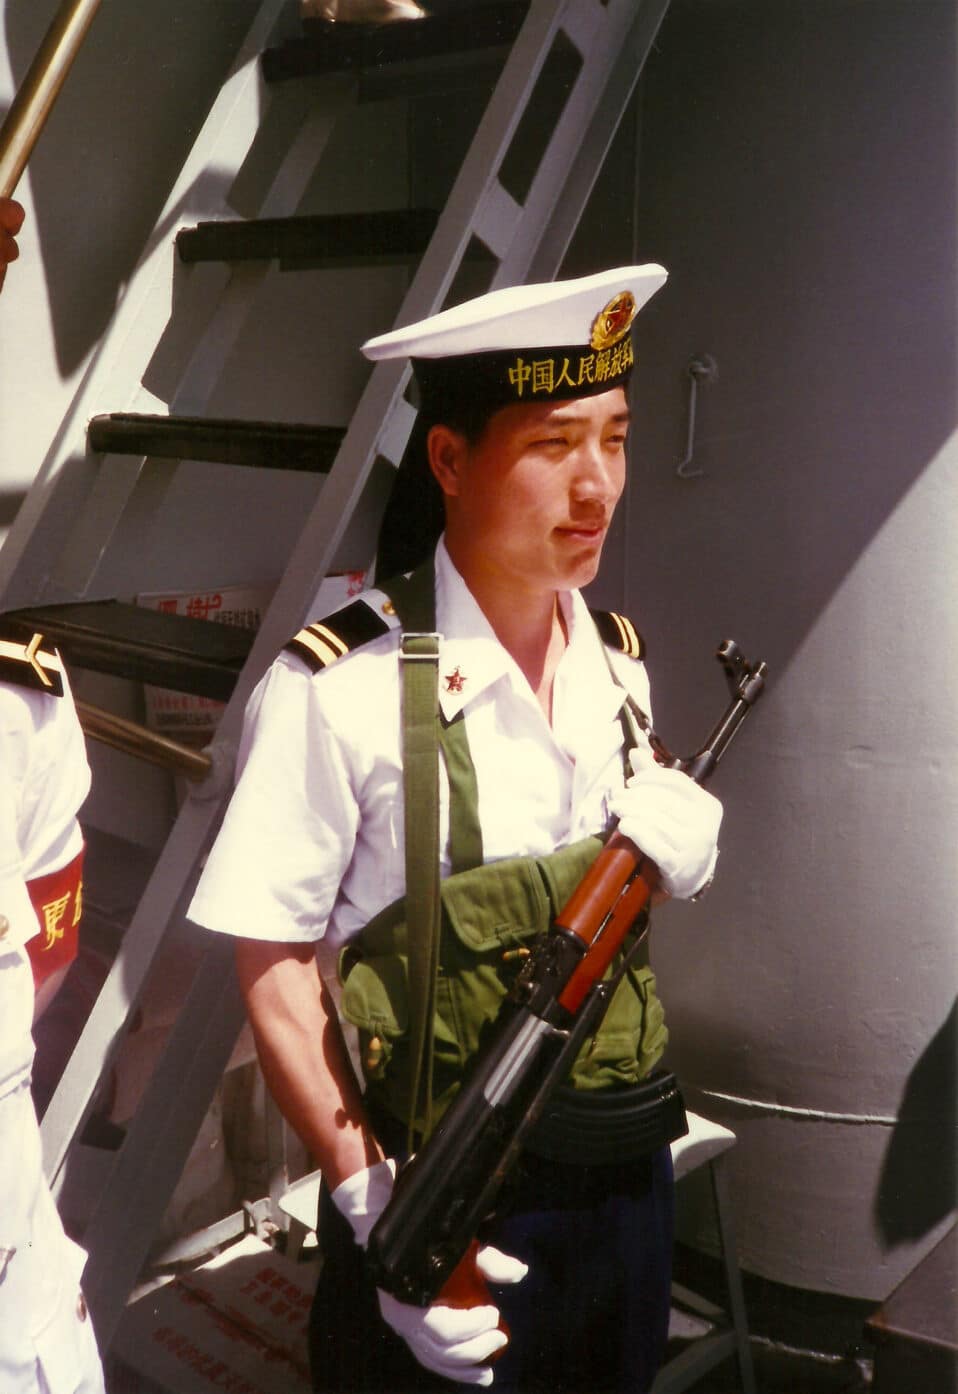 Chinese marine with type 56